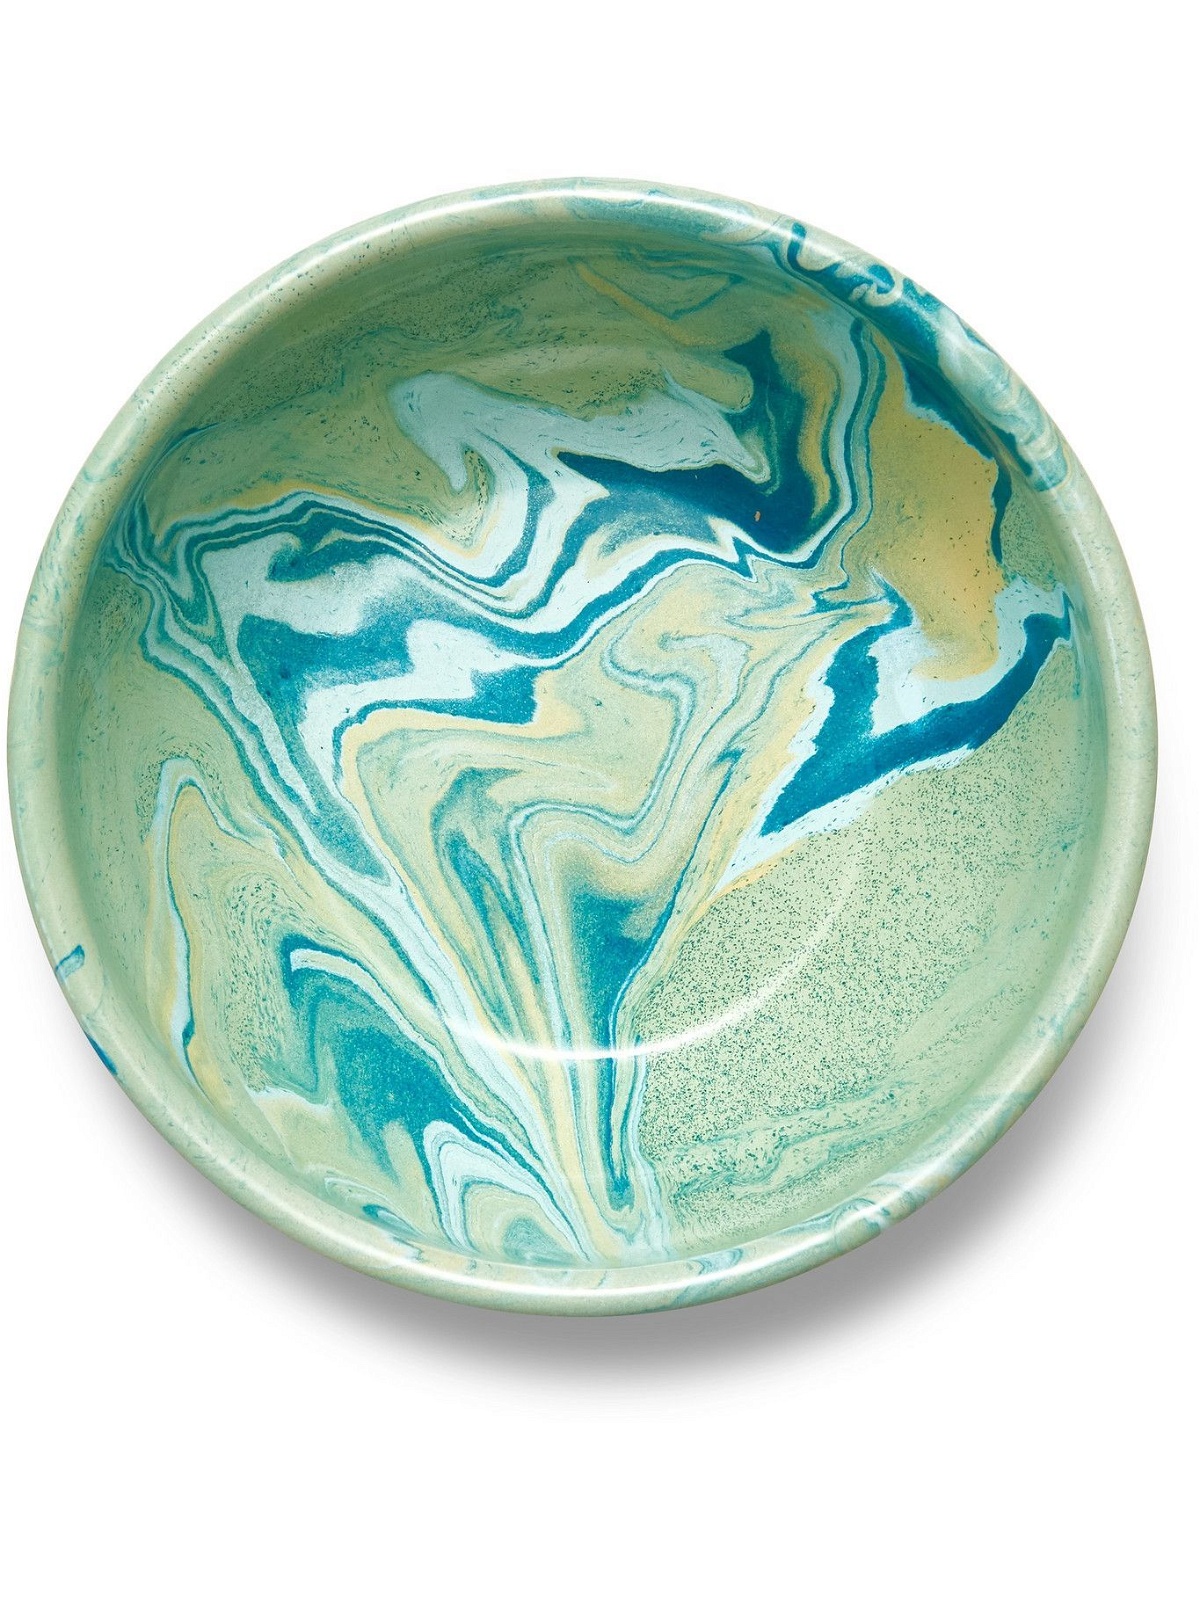 BORNN - Marbled Enamelware Bowl, 16cm